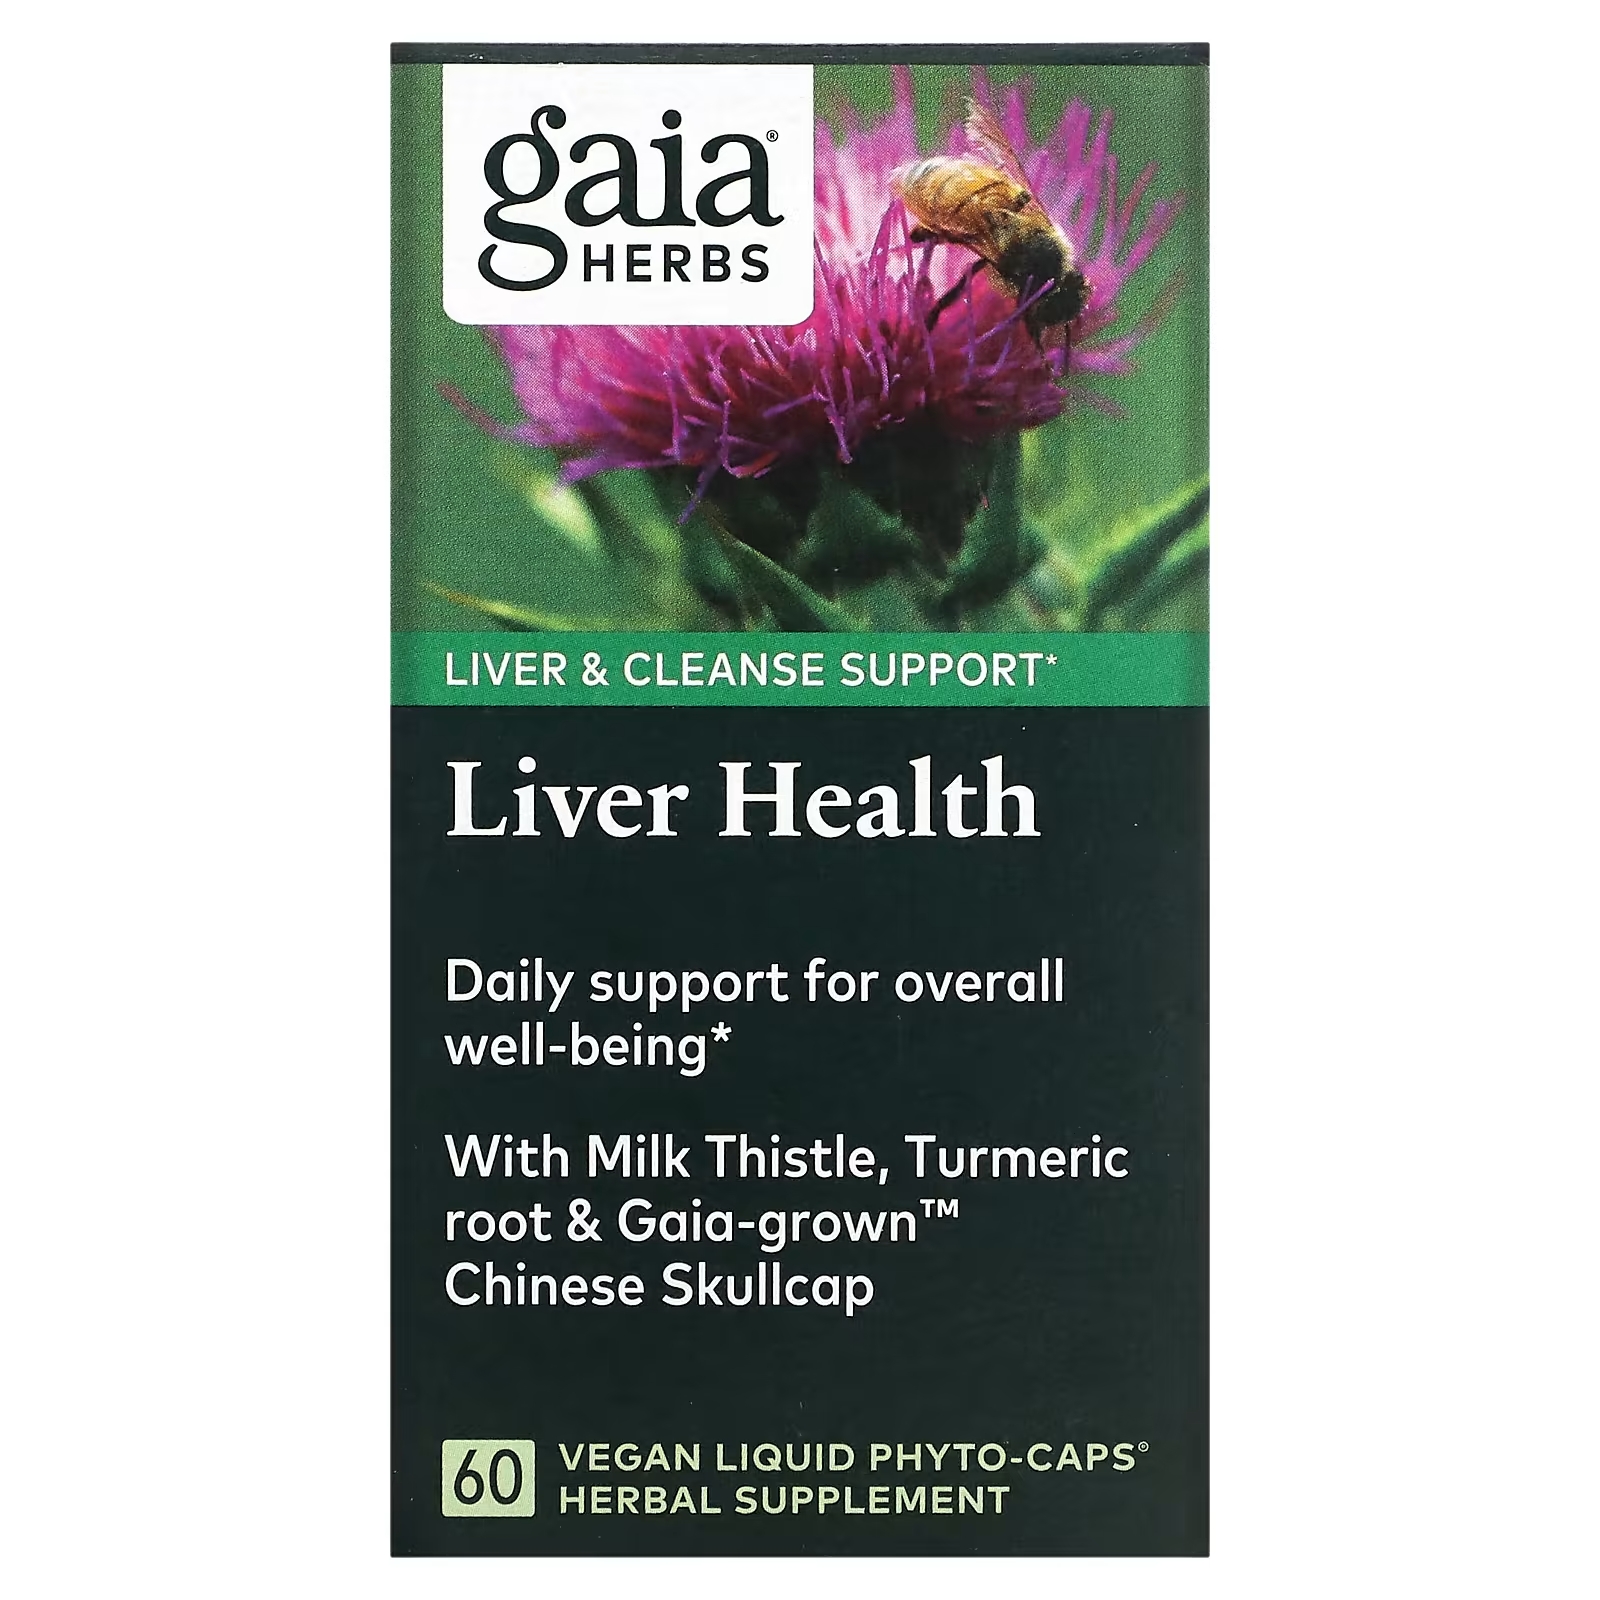 Gaia Herbs средство для поддержания здоровья печени, 60 веганских капсул фотографии